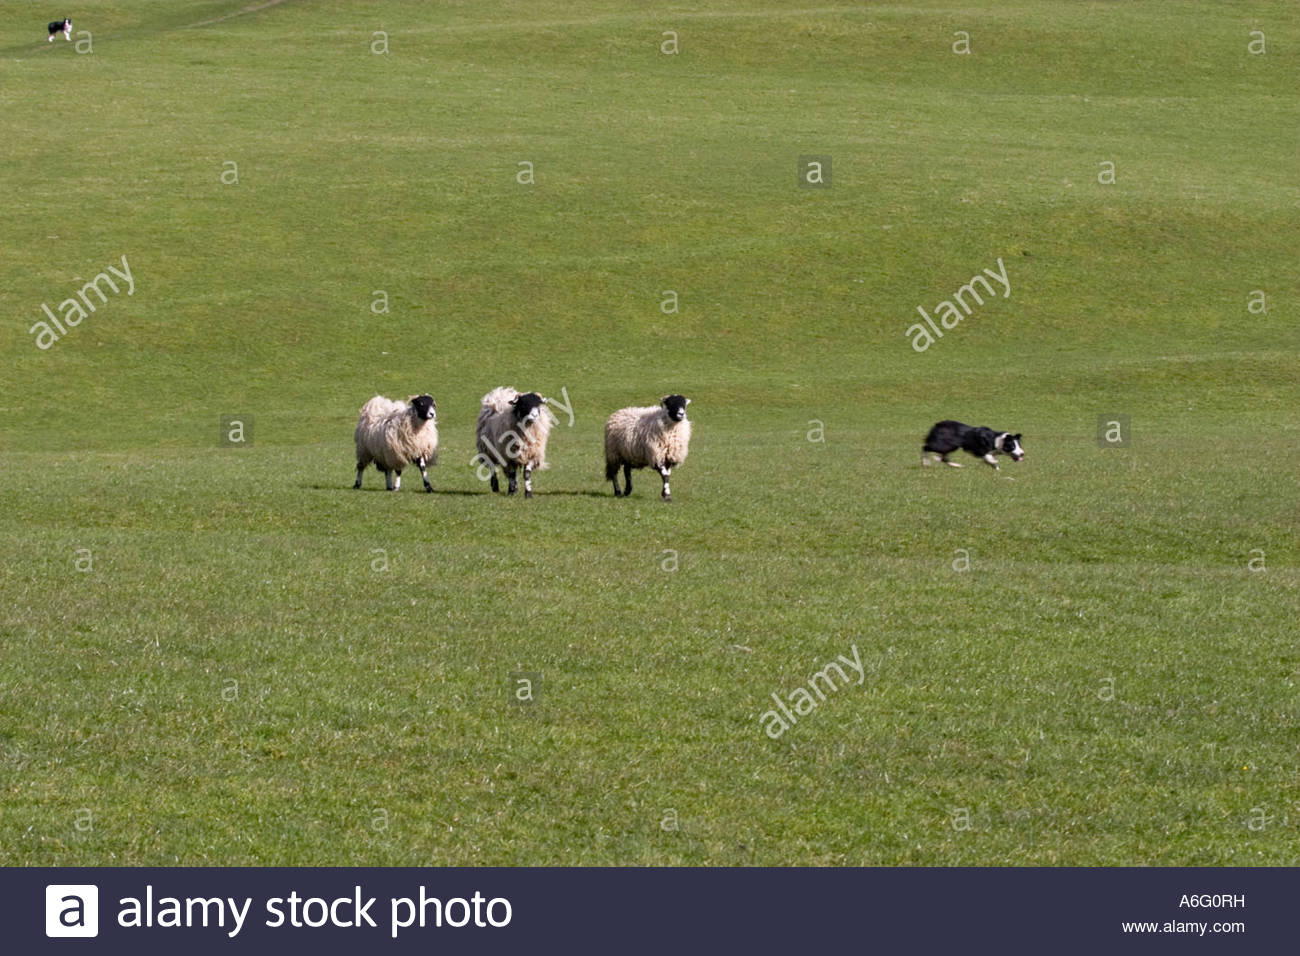 Sheepdog training courses yorkshire